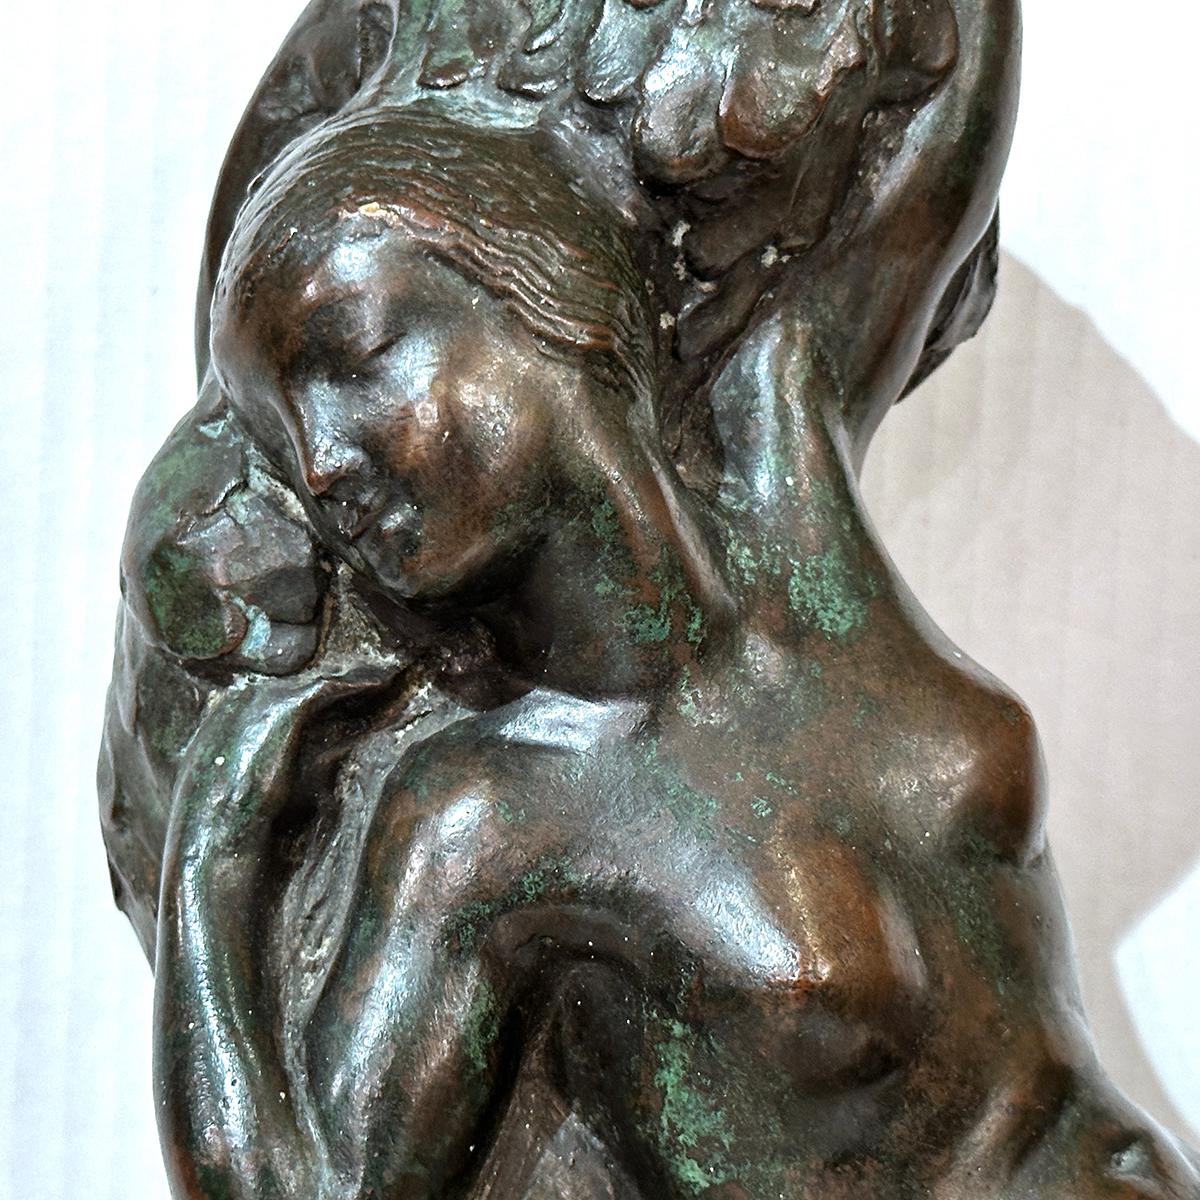 CIRCA 1940er Jahre amerikanische patinierte Bronzestatue einer Frau mit Originalpatina.

Abmessungen:
Länge: 11